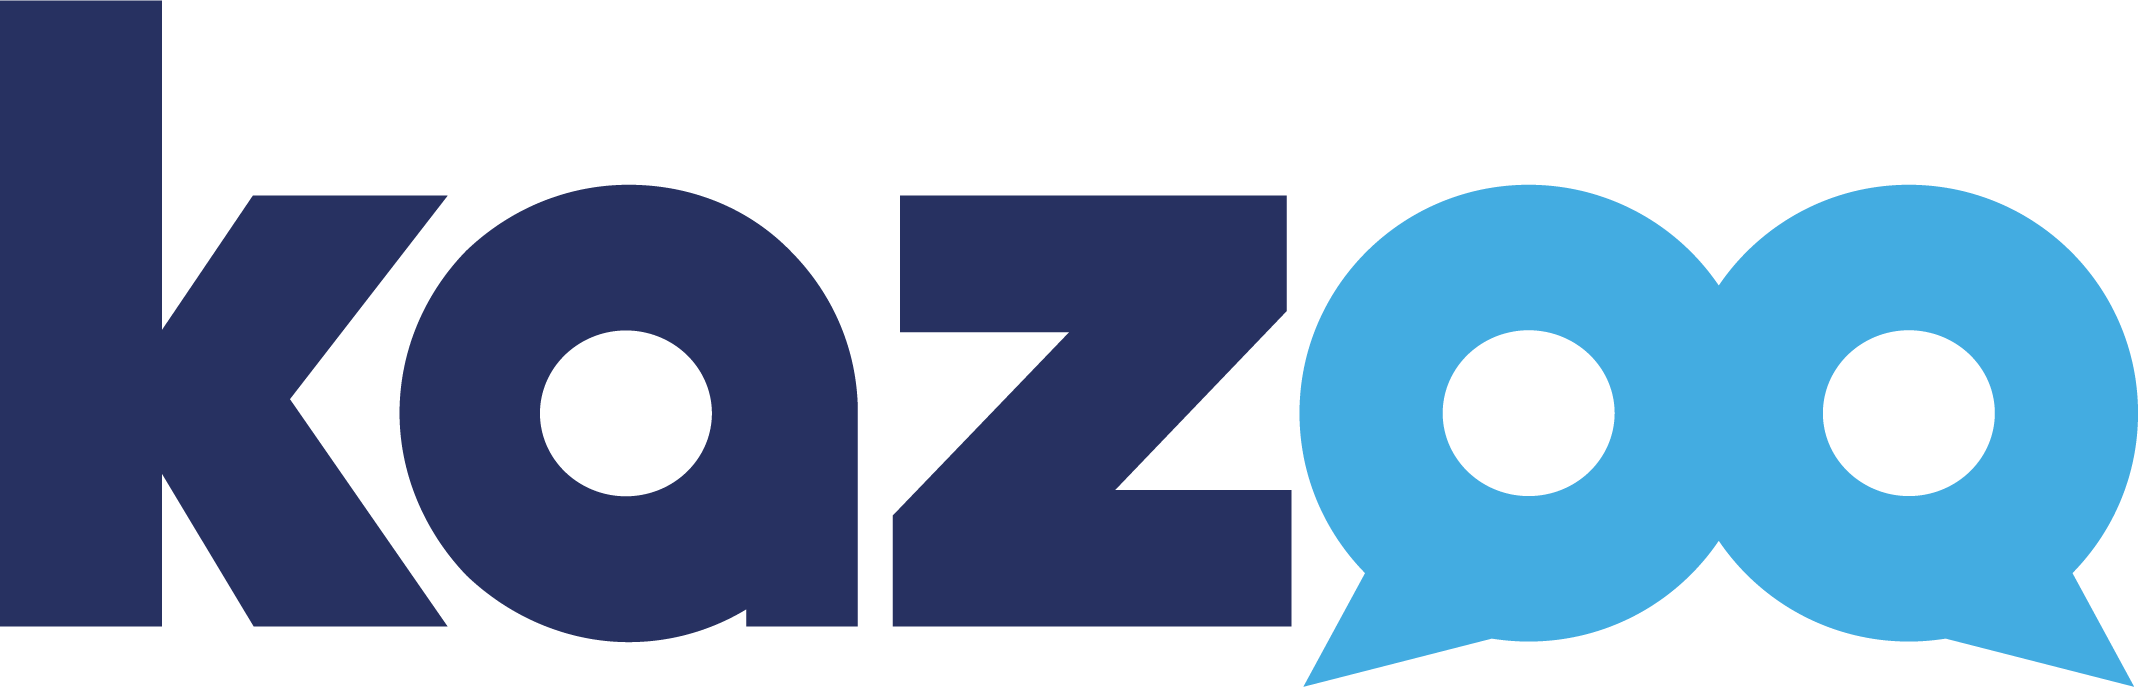 kazoo company logo